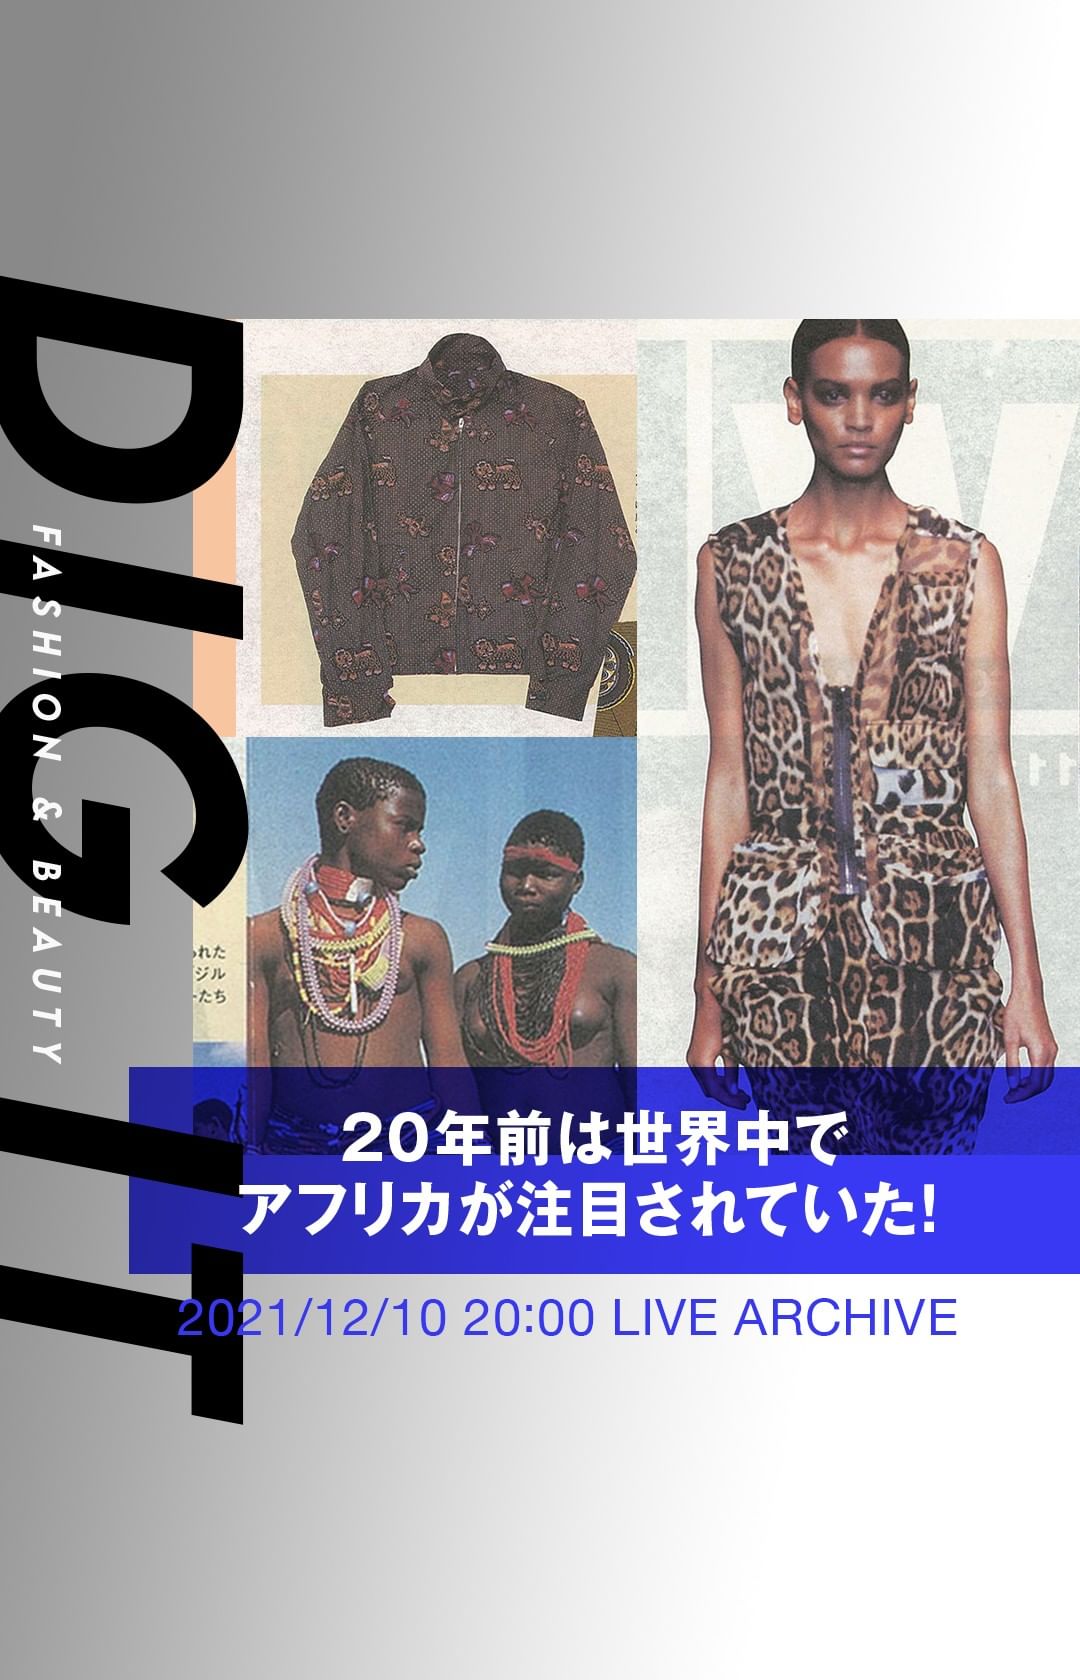 年前ファッショントレンド 世界中でアフリカが注目されていた 01年12月編 今回のdigitは 1979年から発行を続ける ファッション業界 Magmoe